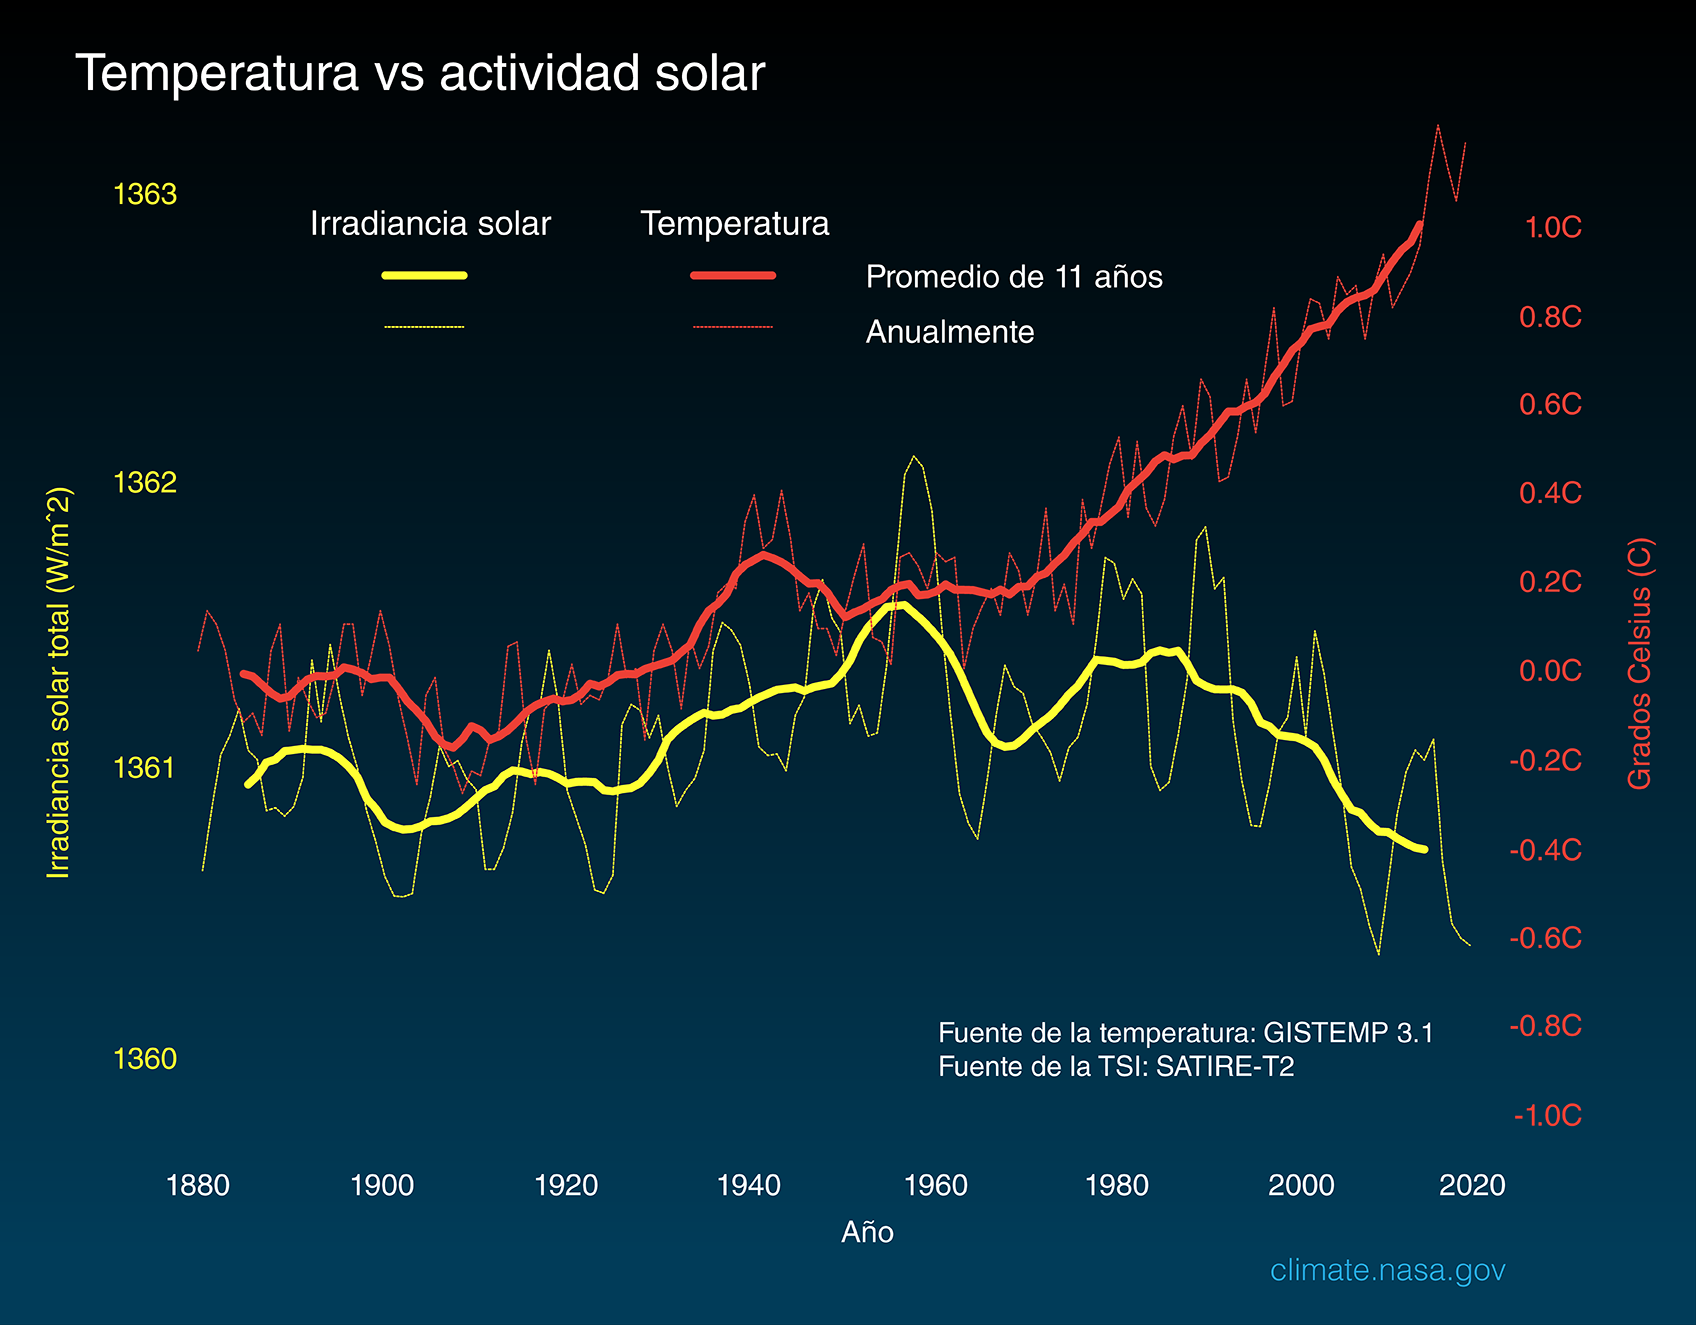 Temperature vs Solar Activity - Spanish